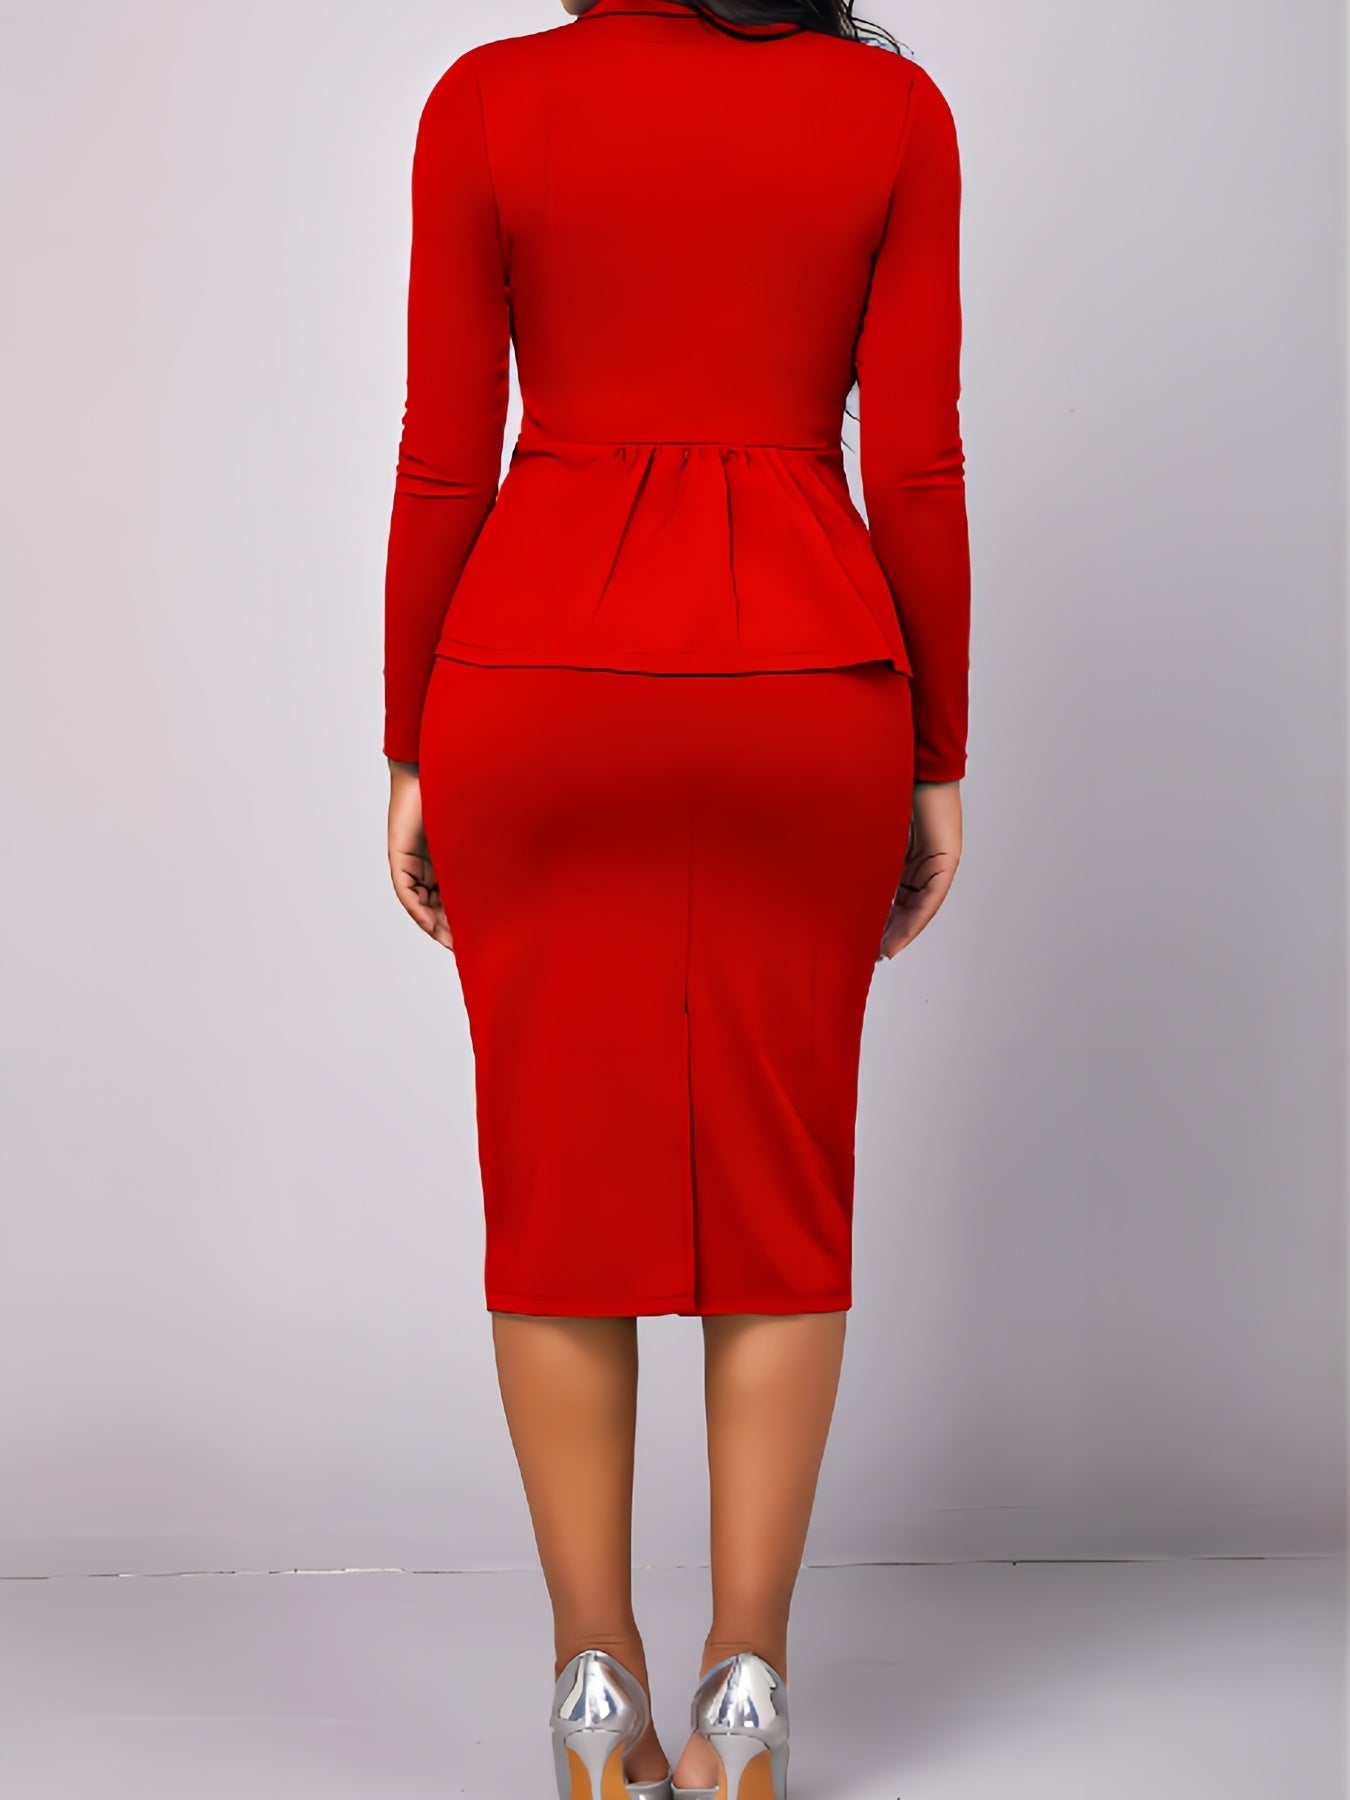 Two-piece Skirt Suit Set, Lapel Blazer & Sheath Midi Skirt 2pcs Business Outfit, Women's Clothing